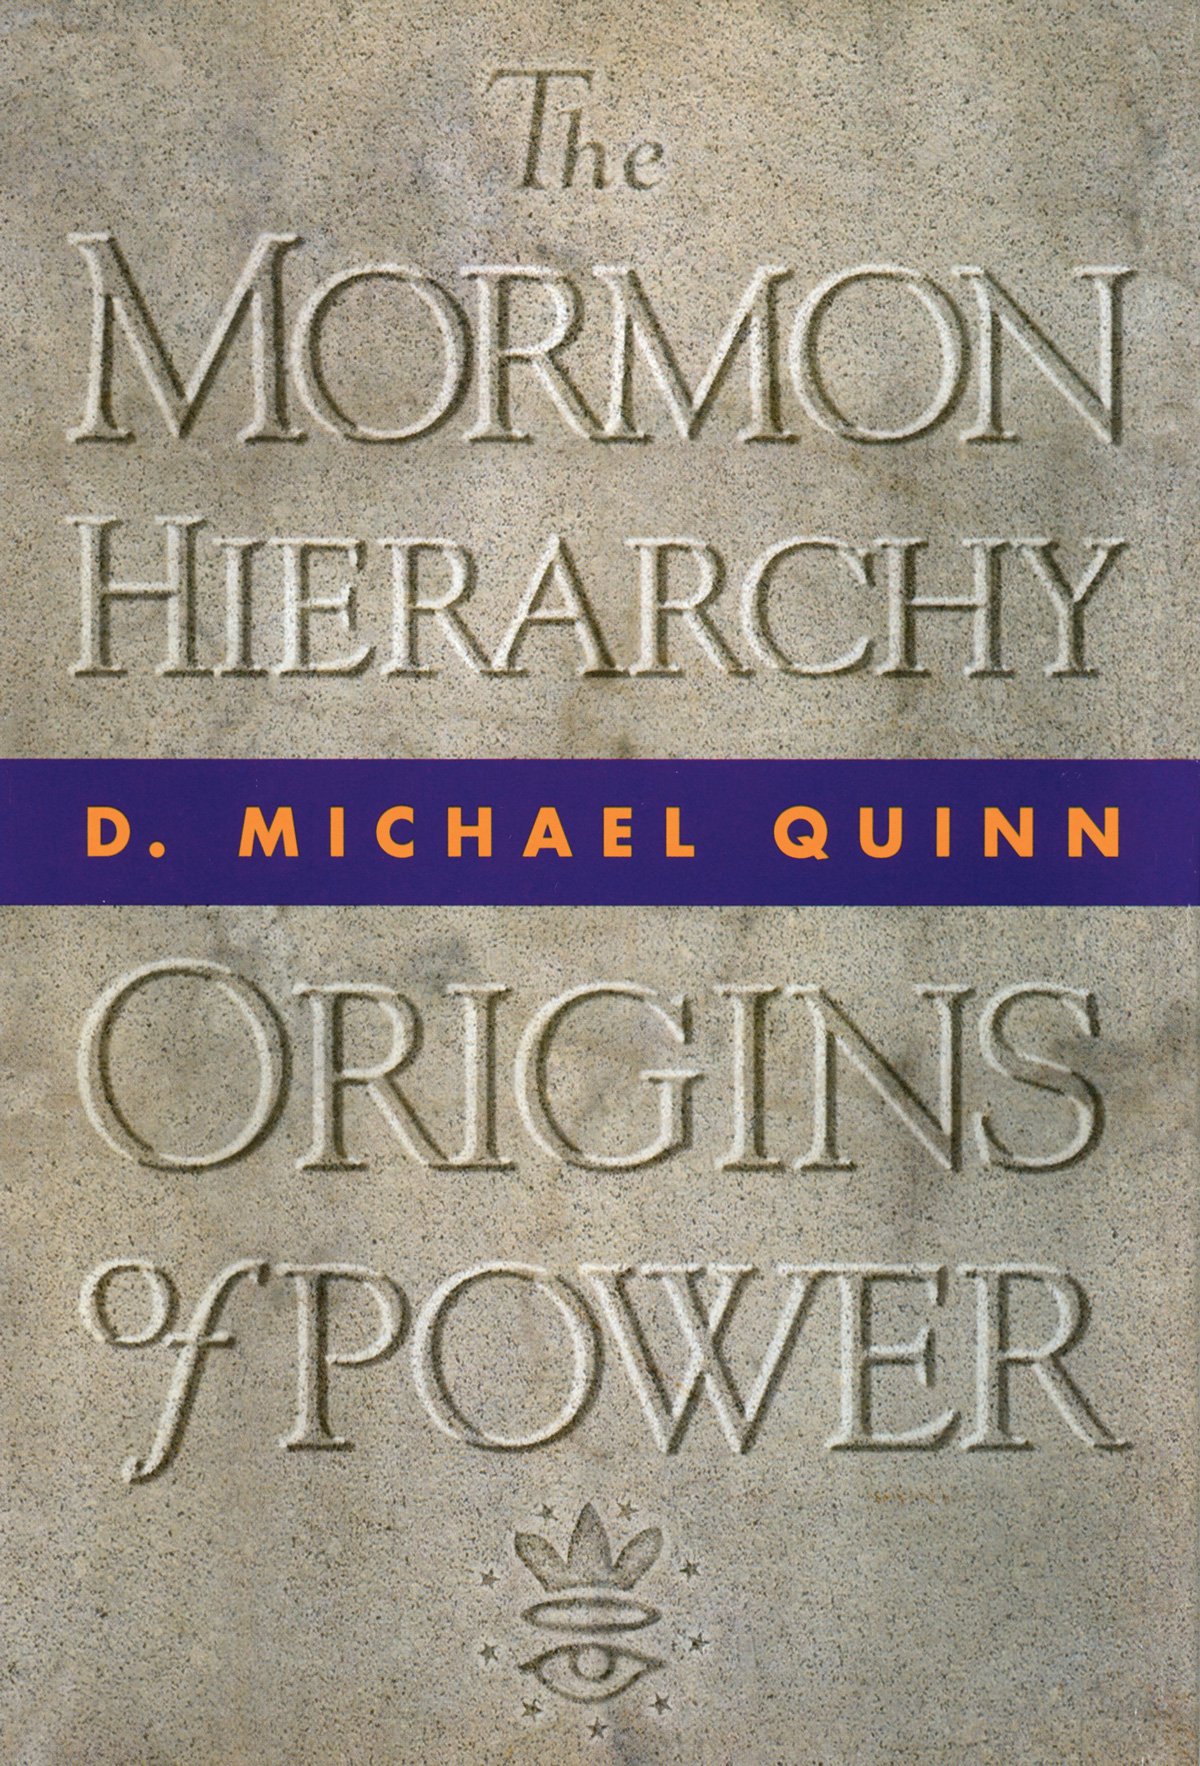 The Mormon Hierarchy: Origins of Power